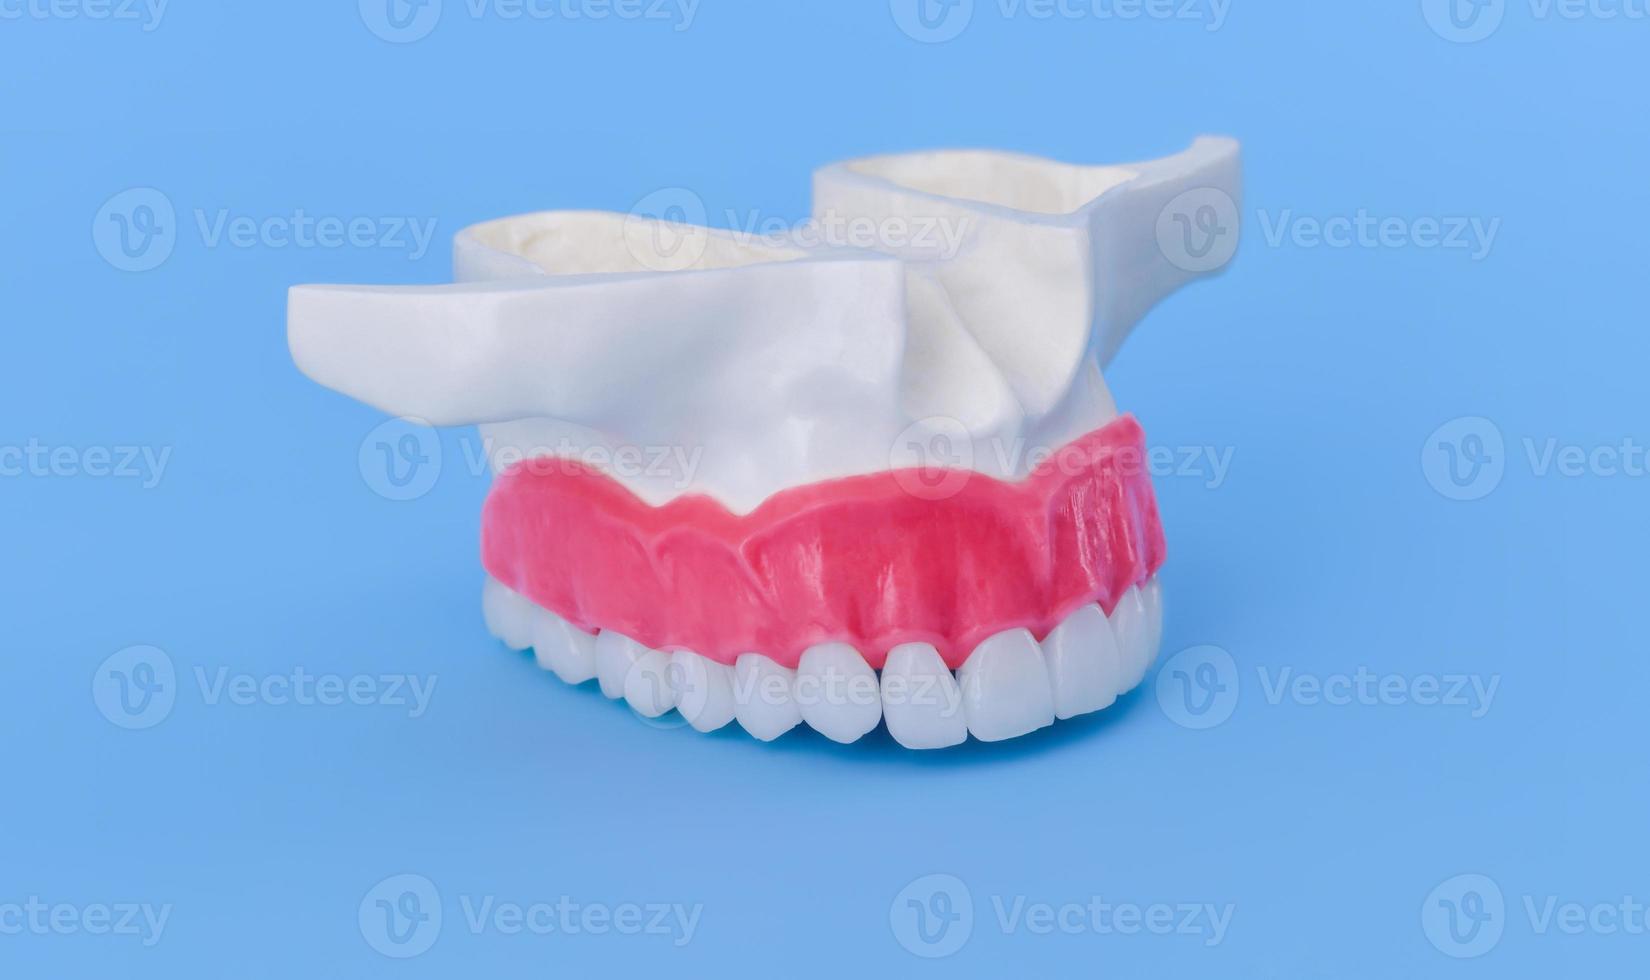 menschlicher Oberkiefer mit Zähnen und Zahnfleisch Anatomiemodell foto